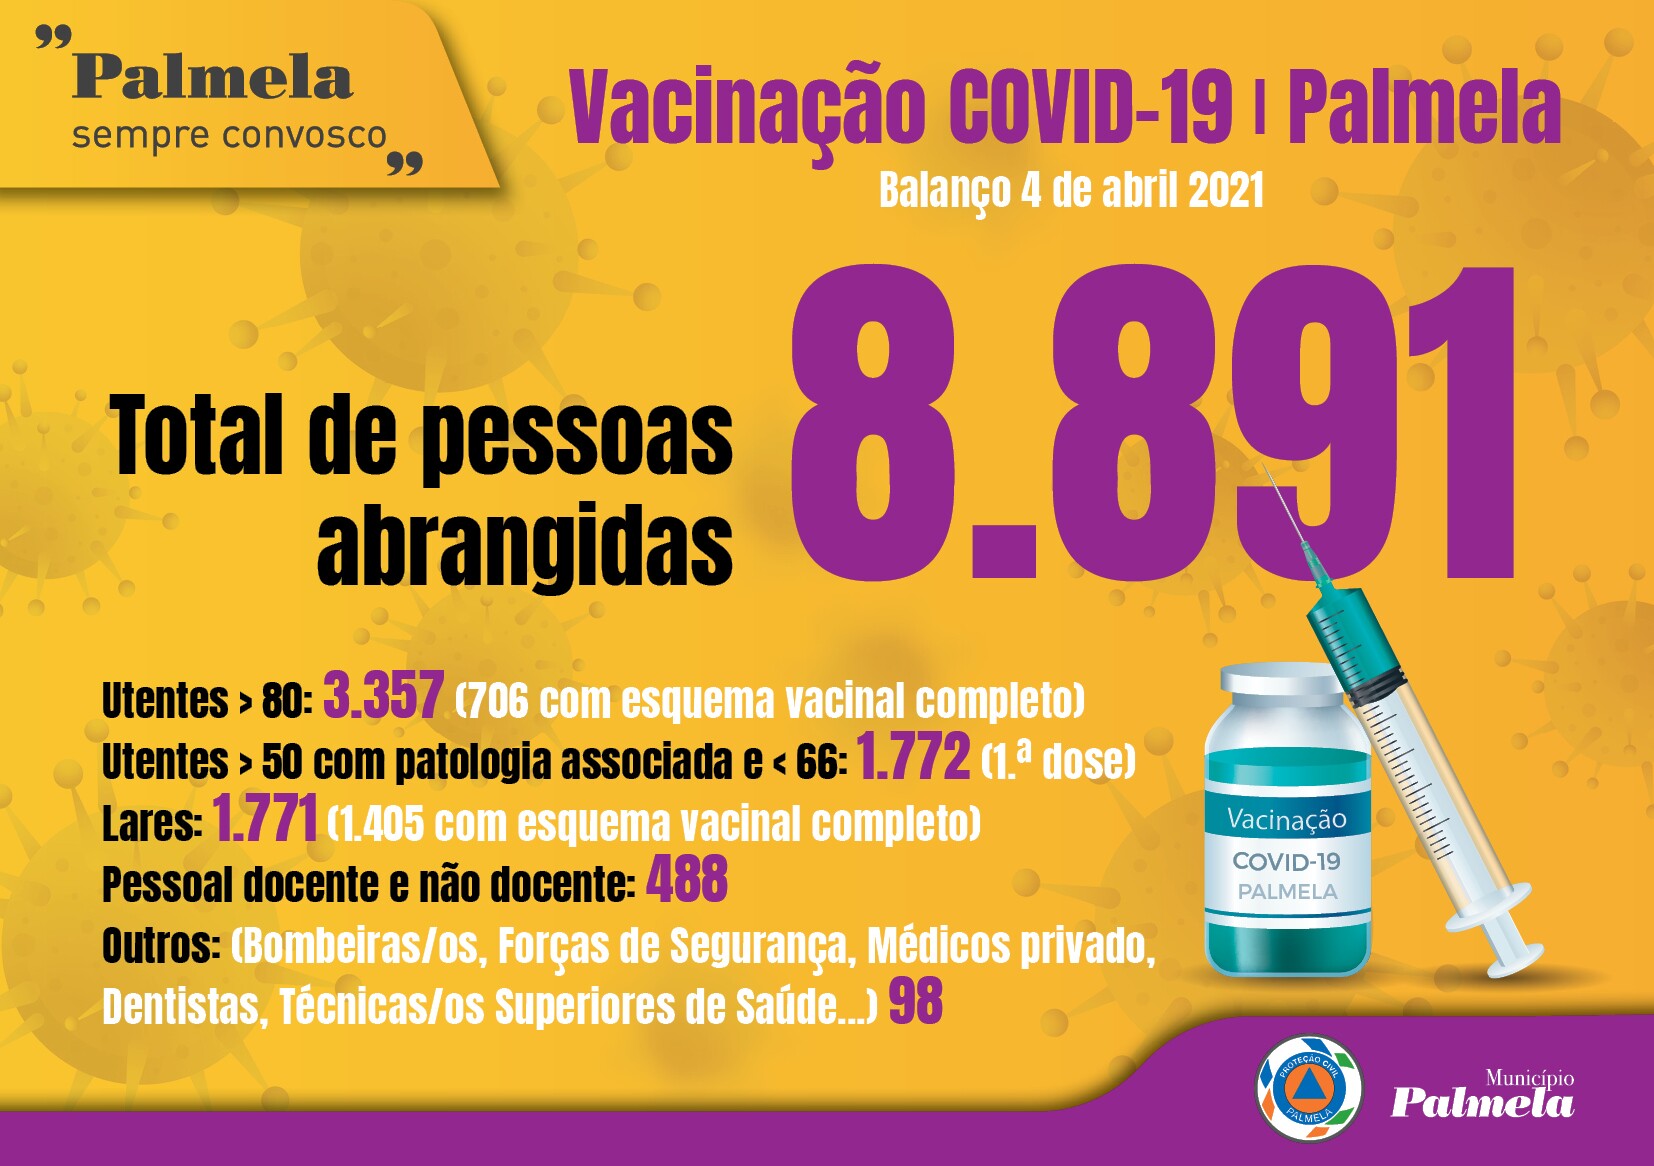 Vacinação COVID-19 no concelho de Palmela - atualização a 4 de abril